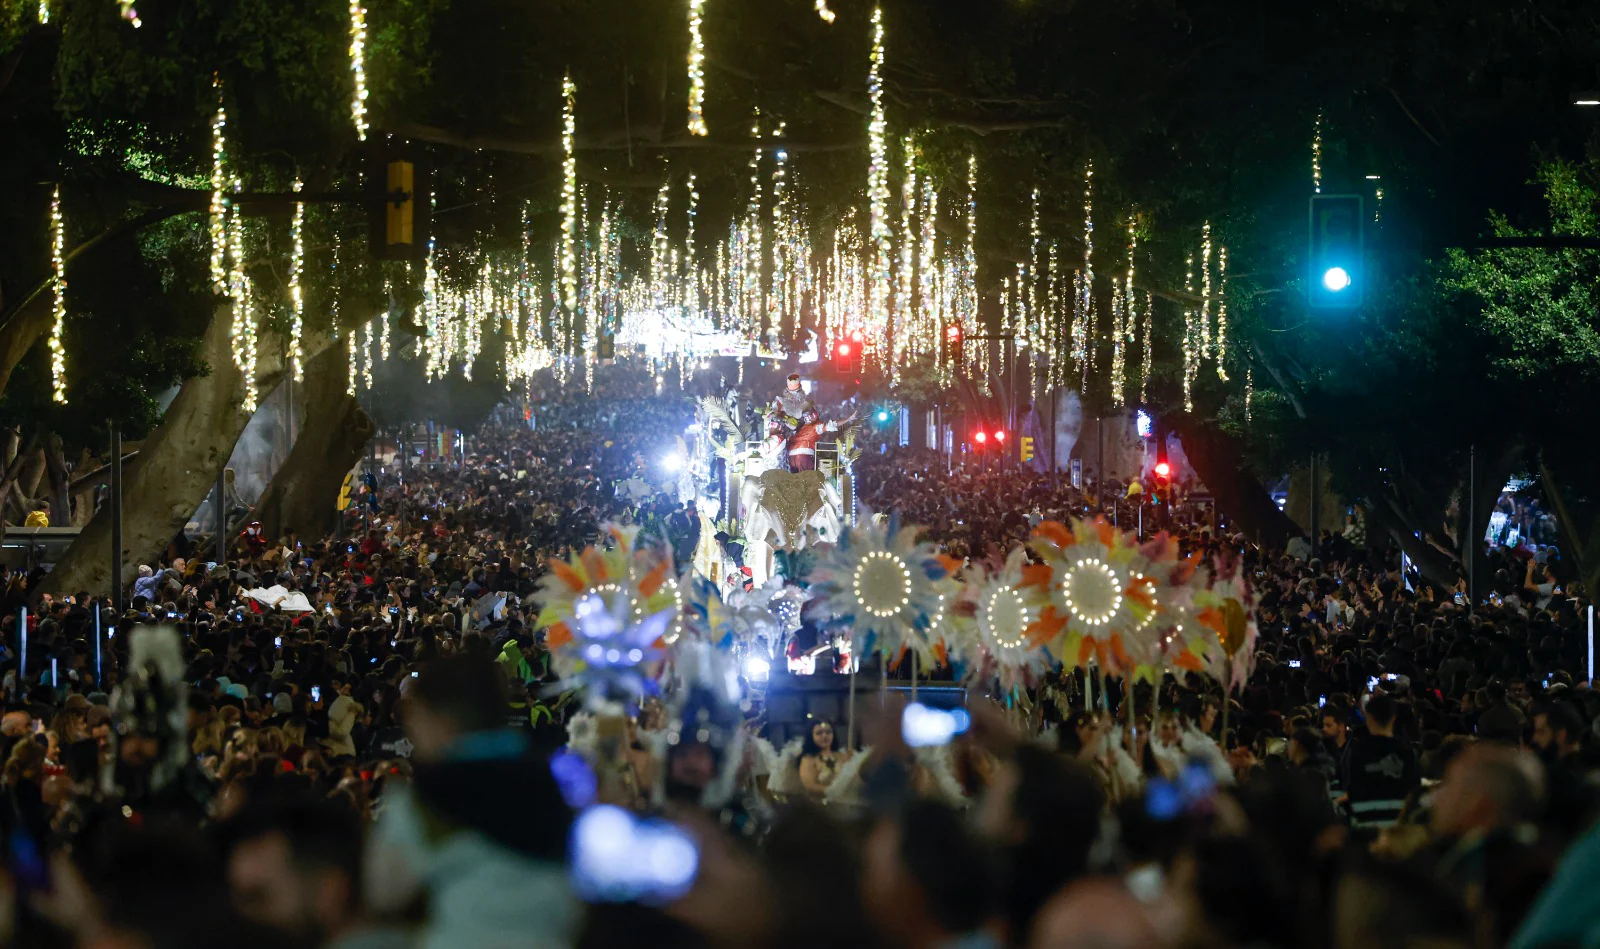 The Three Kings parade in Malaga city.